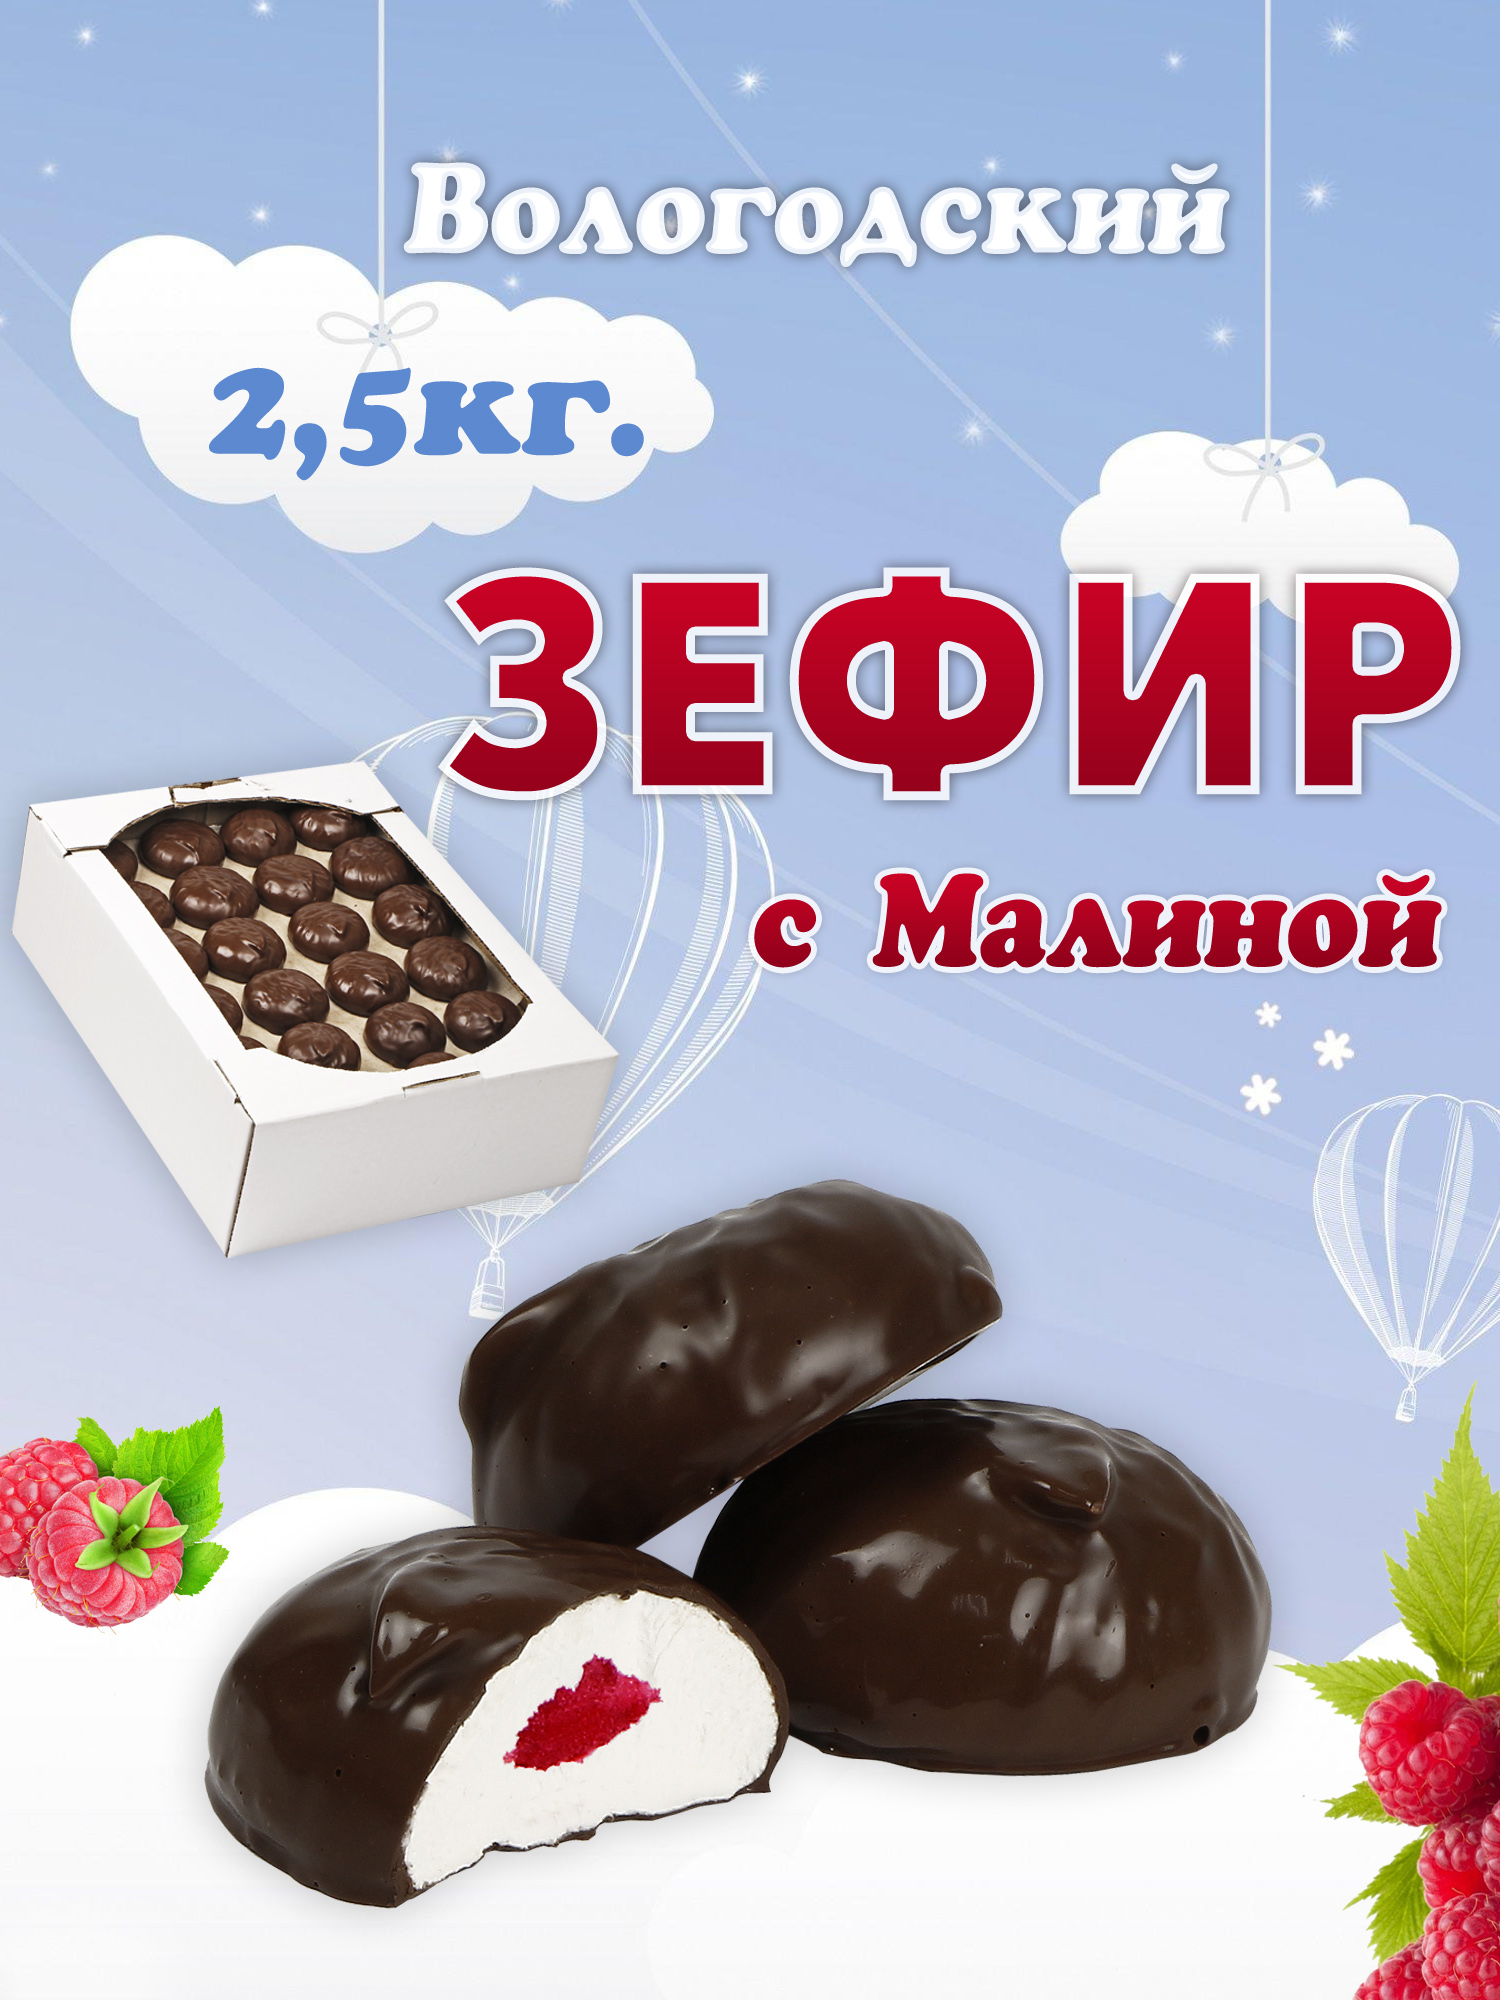 Зефир Вологодский в шоколаде с Малиной 2,5кг.  .jpg